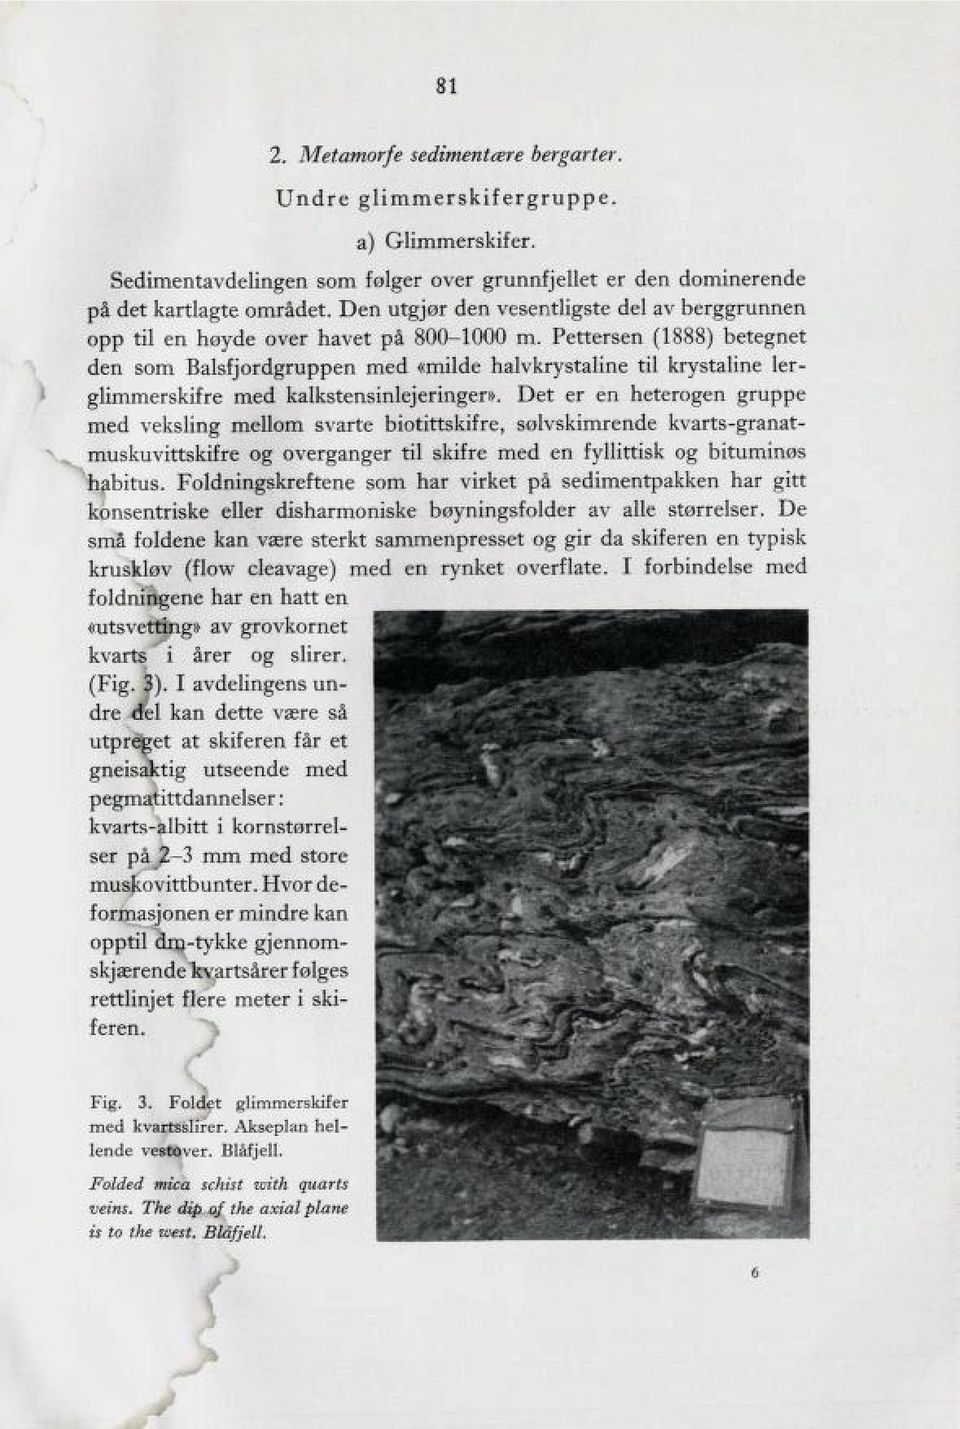 Pettersen (1888) betegnet den som Balsfjordgruppen med «milde halvkrystaline til krystaline ler glimmerskifre med kalkstensinlejeringer».